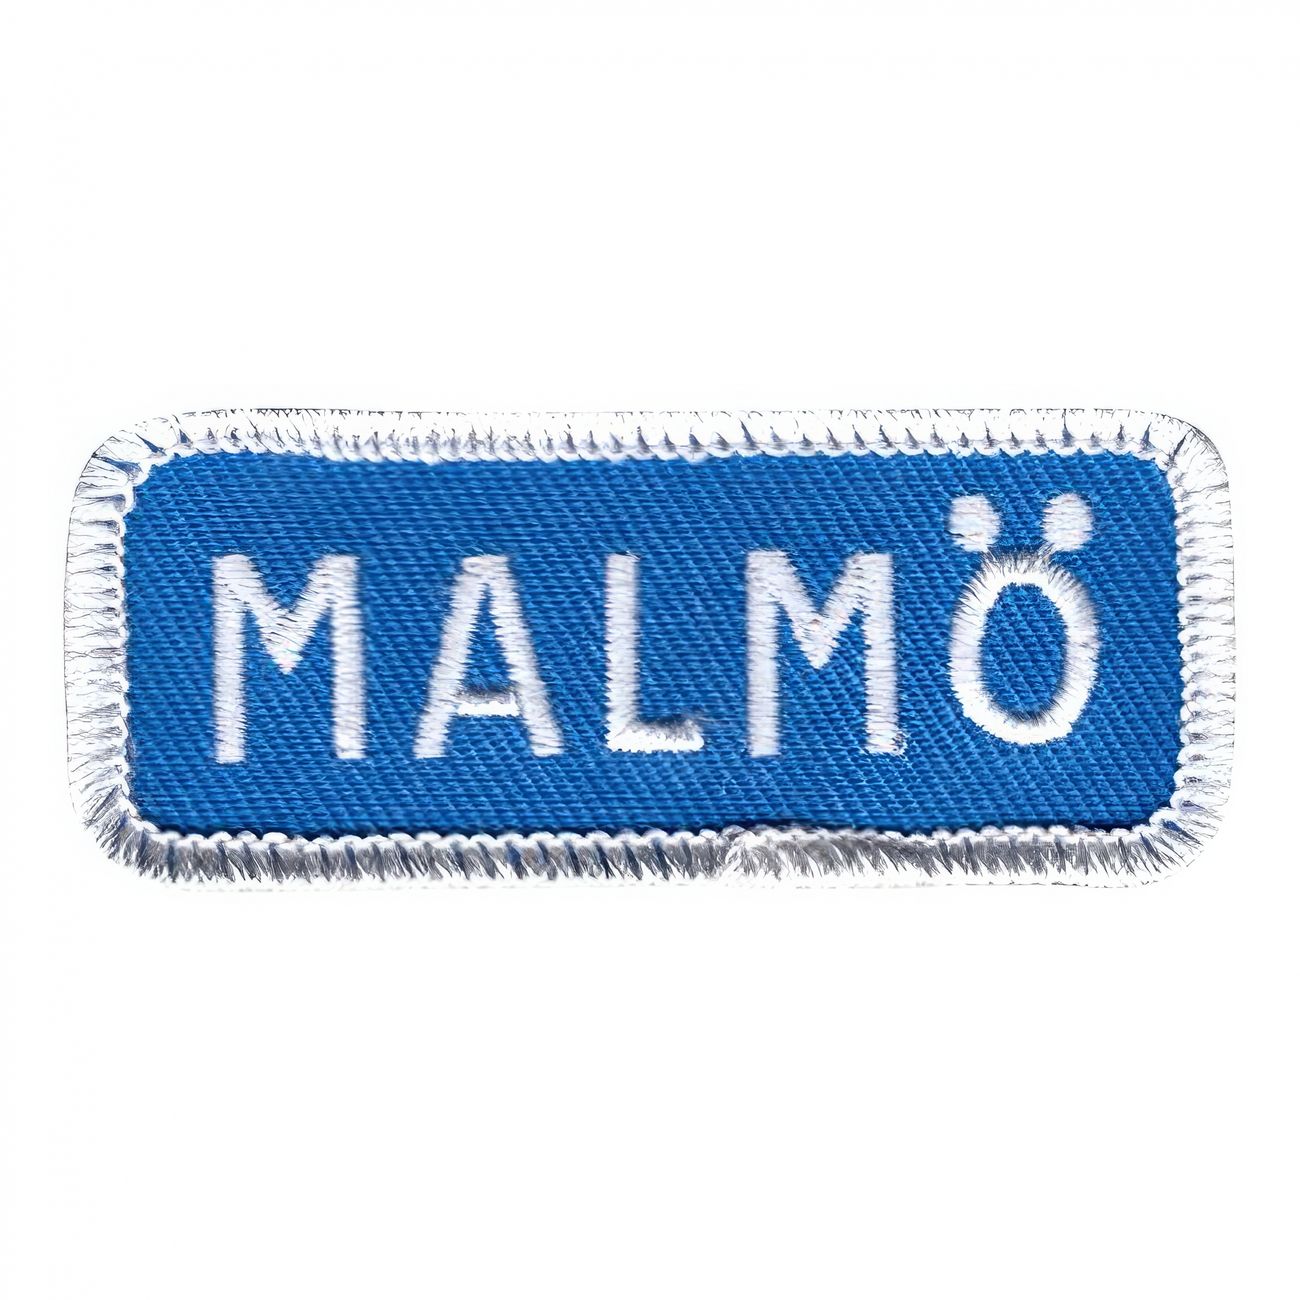 tygmarke-vagskylt-malmo-93781-1